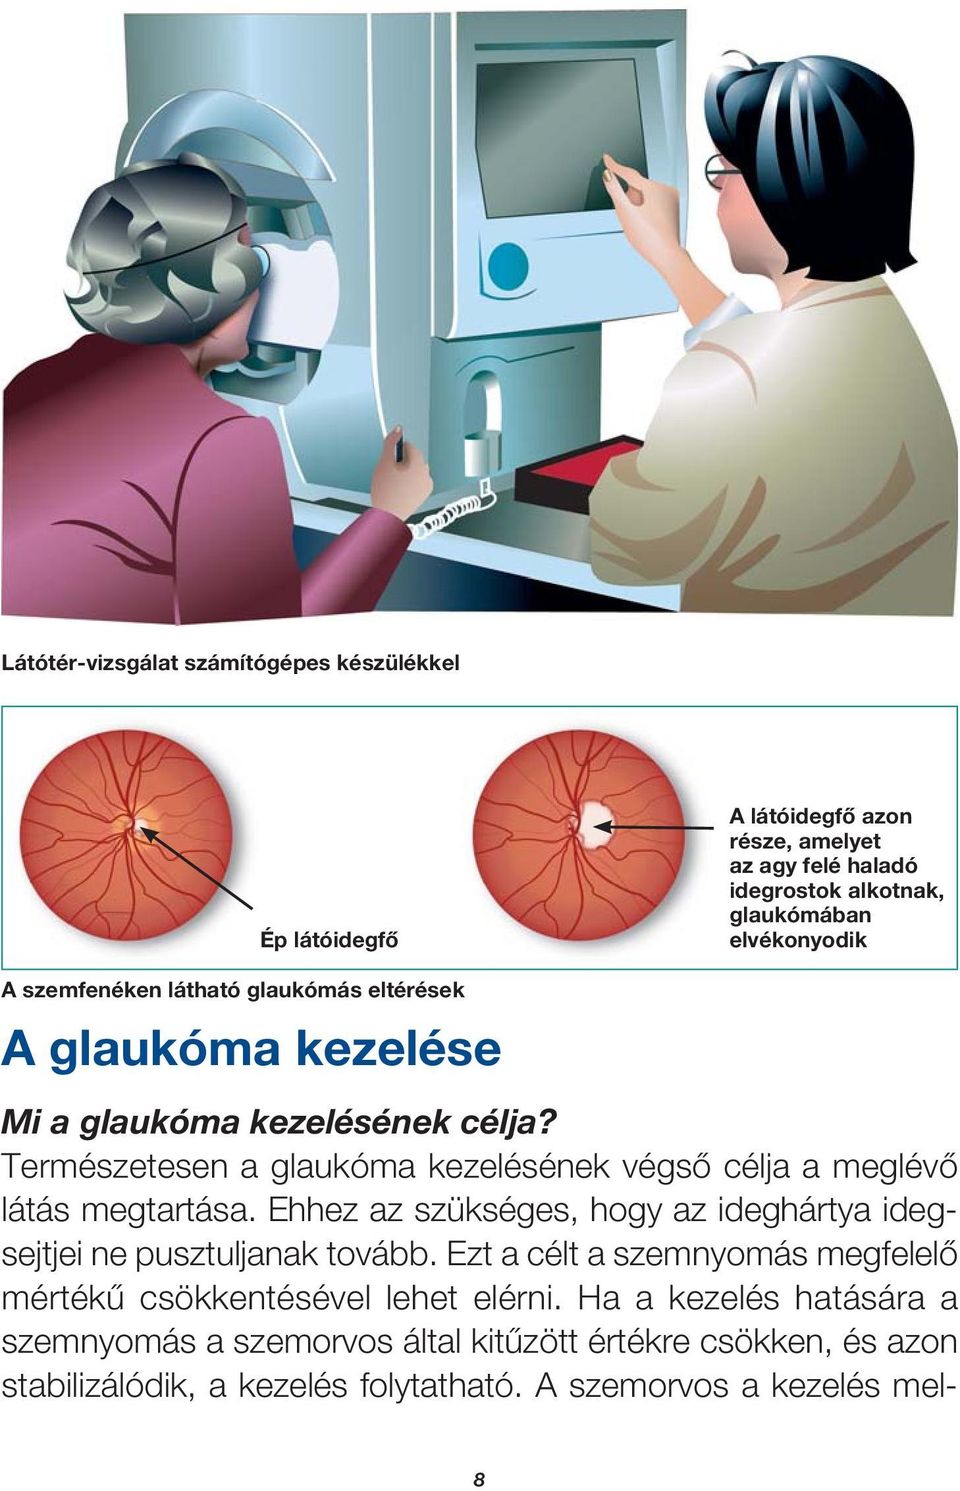 magas vérnyomás kezelése glaukómában)